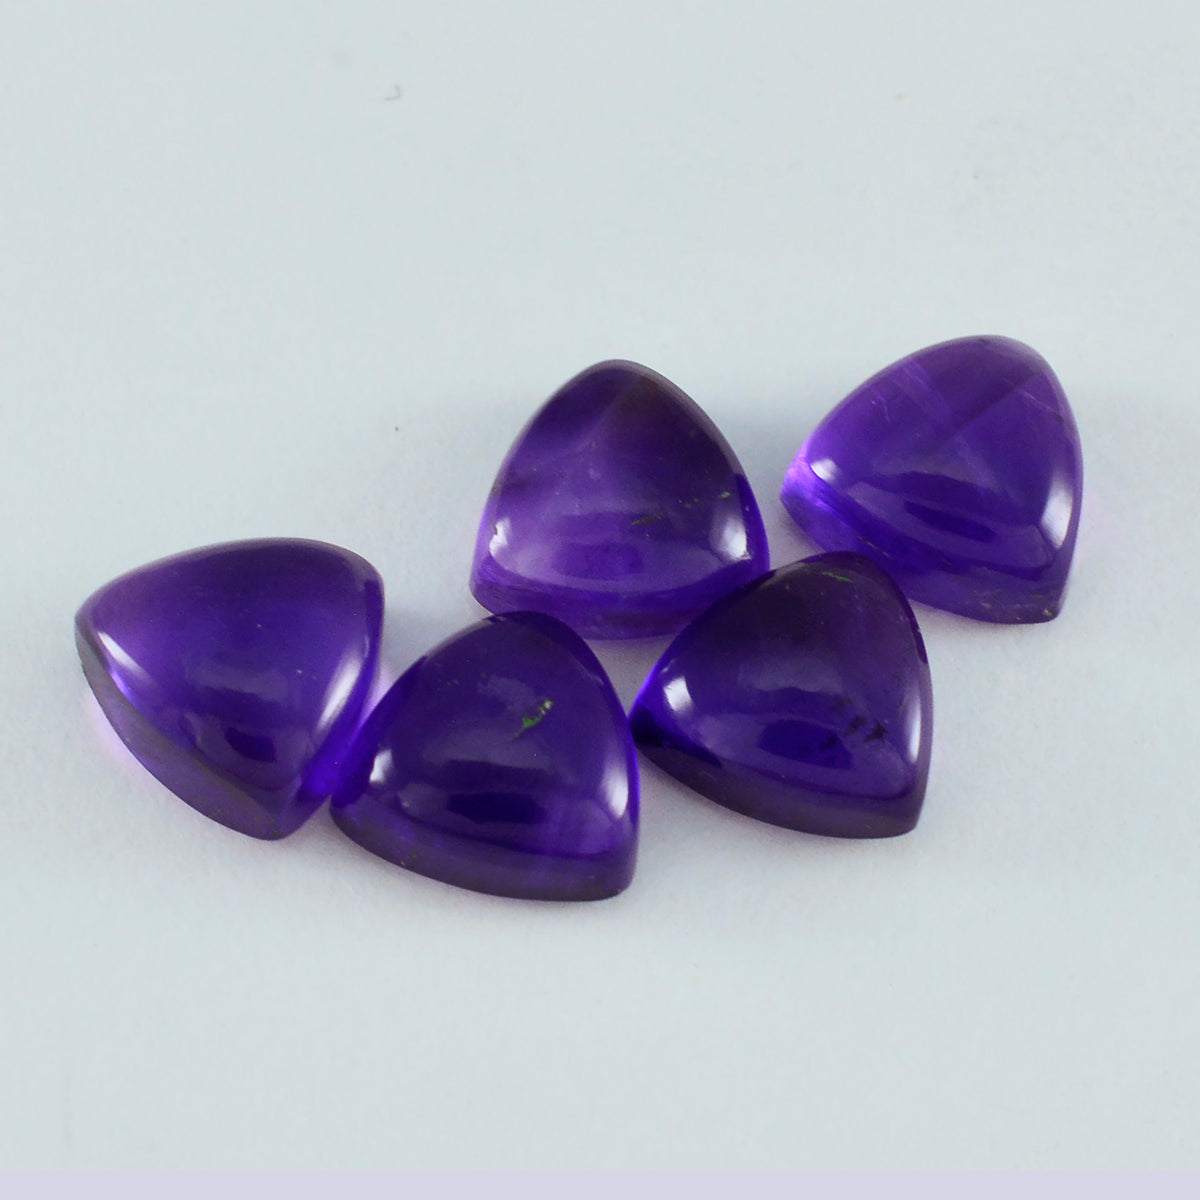 Riyogems 1PC Purple Amethyst Cabochon 10x10 mm Trillion Shape superb Quality Gems